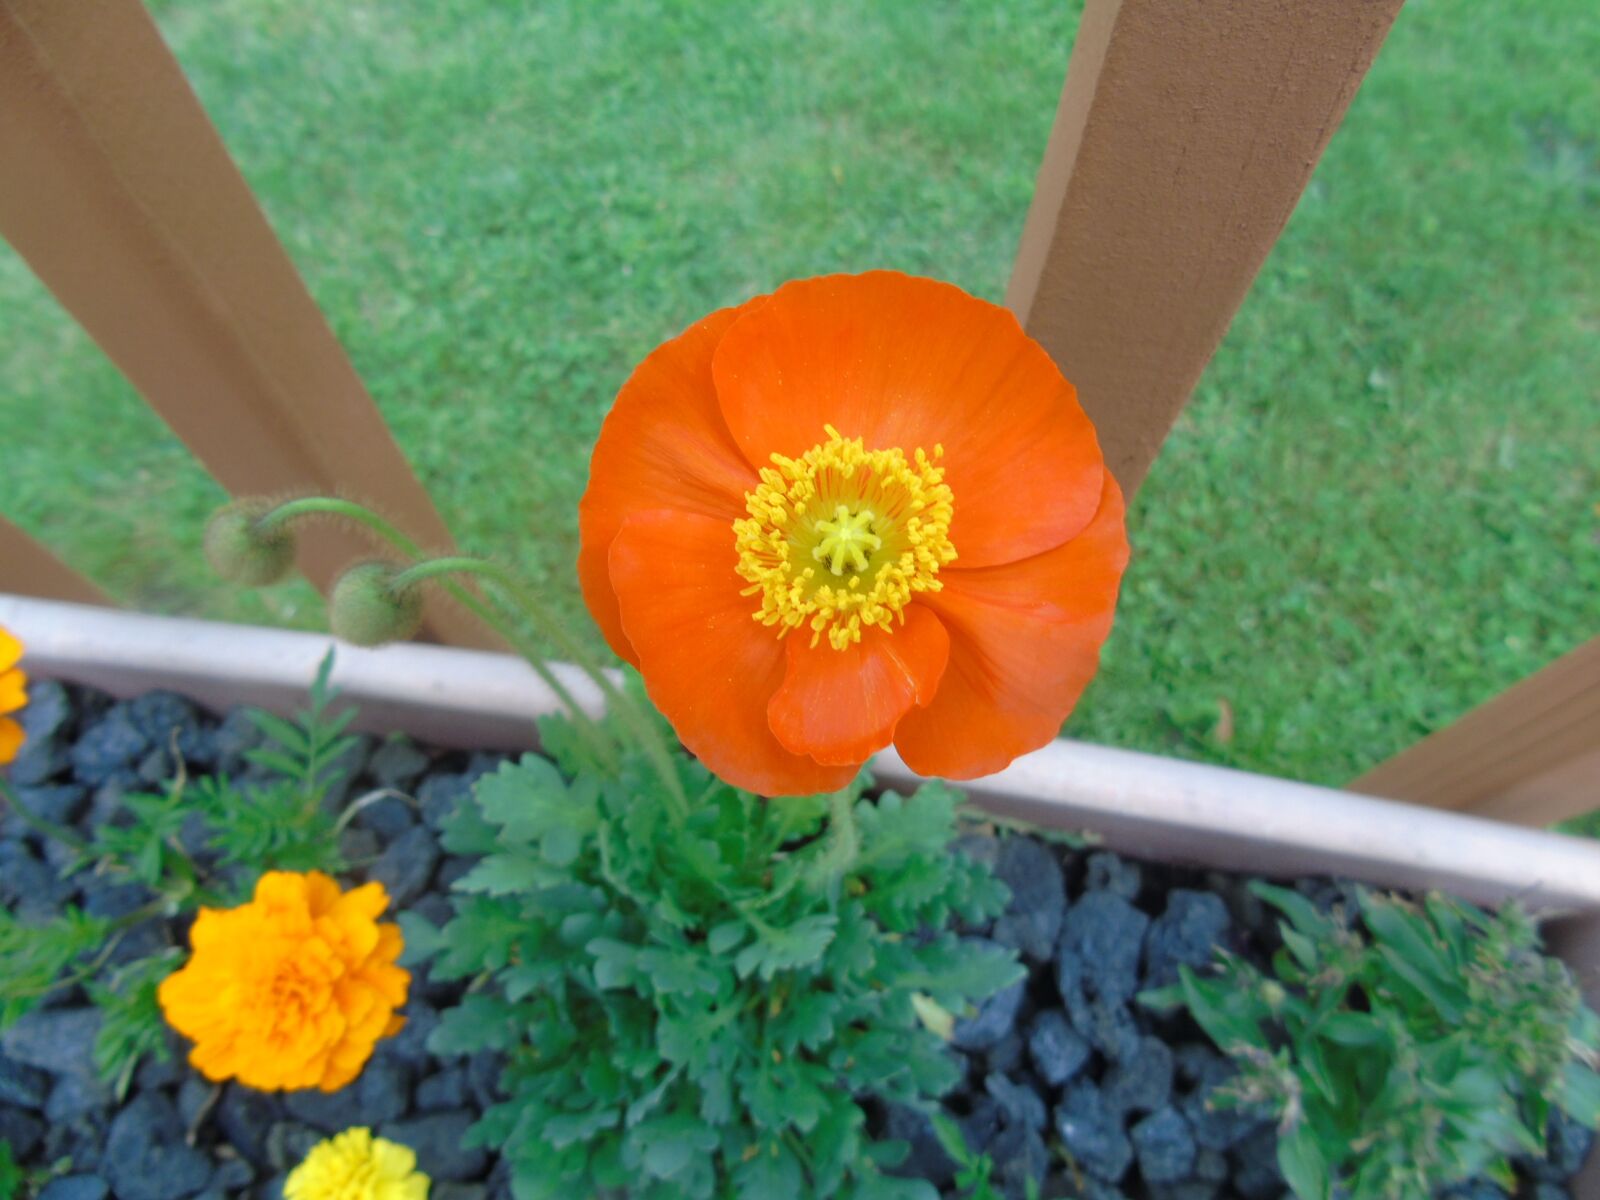 Sony Cyber-shot DSC-H400 sample photo. Poppy, flower, orange photography